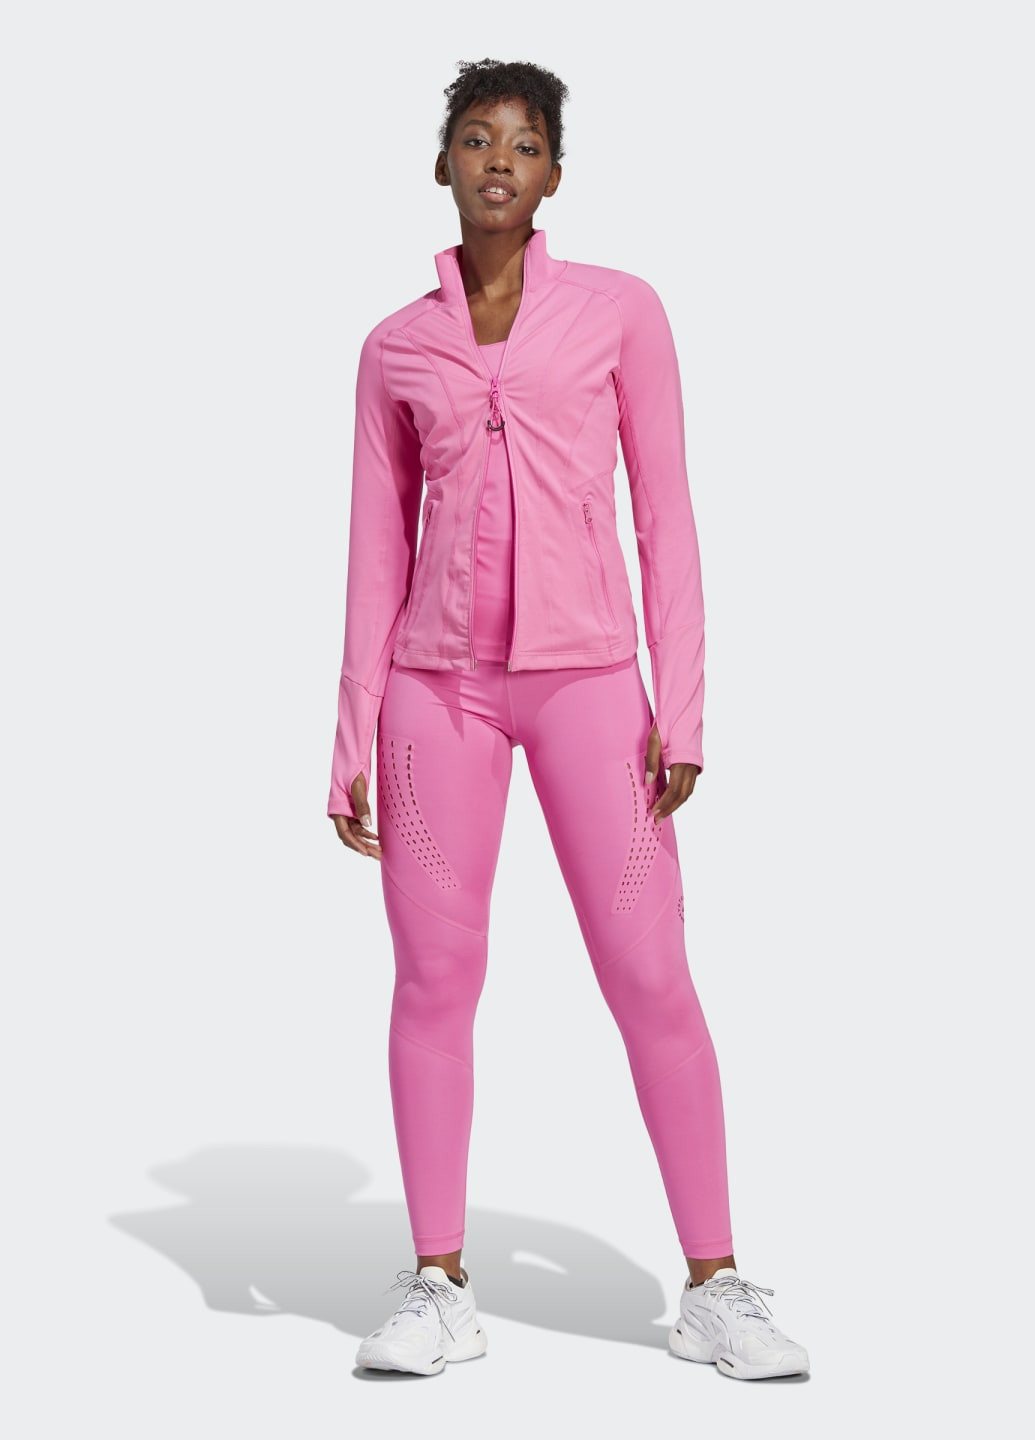 Розовые демисезонные леггинсы для фитнеса by stella mccartney truepurpose adidas